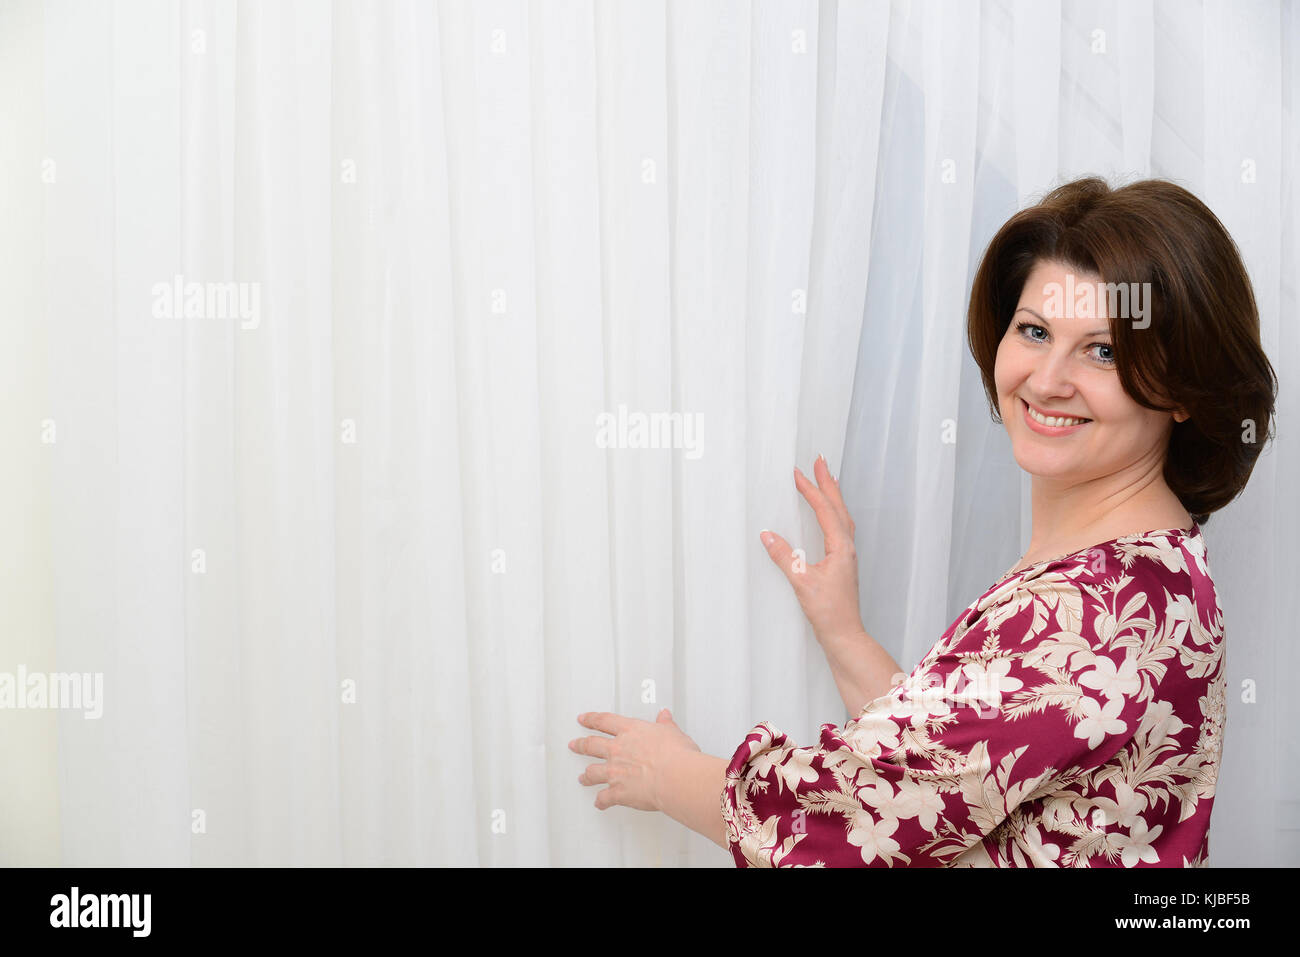 La mujer está de pie cerca de tulle cortinas blancas Foto de stock